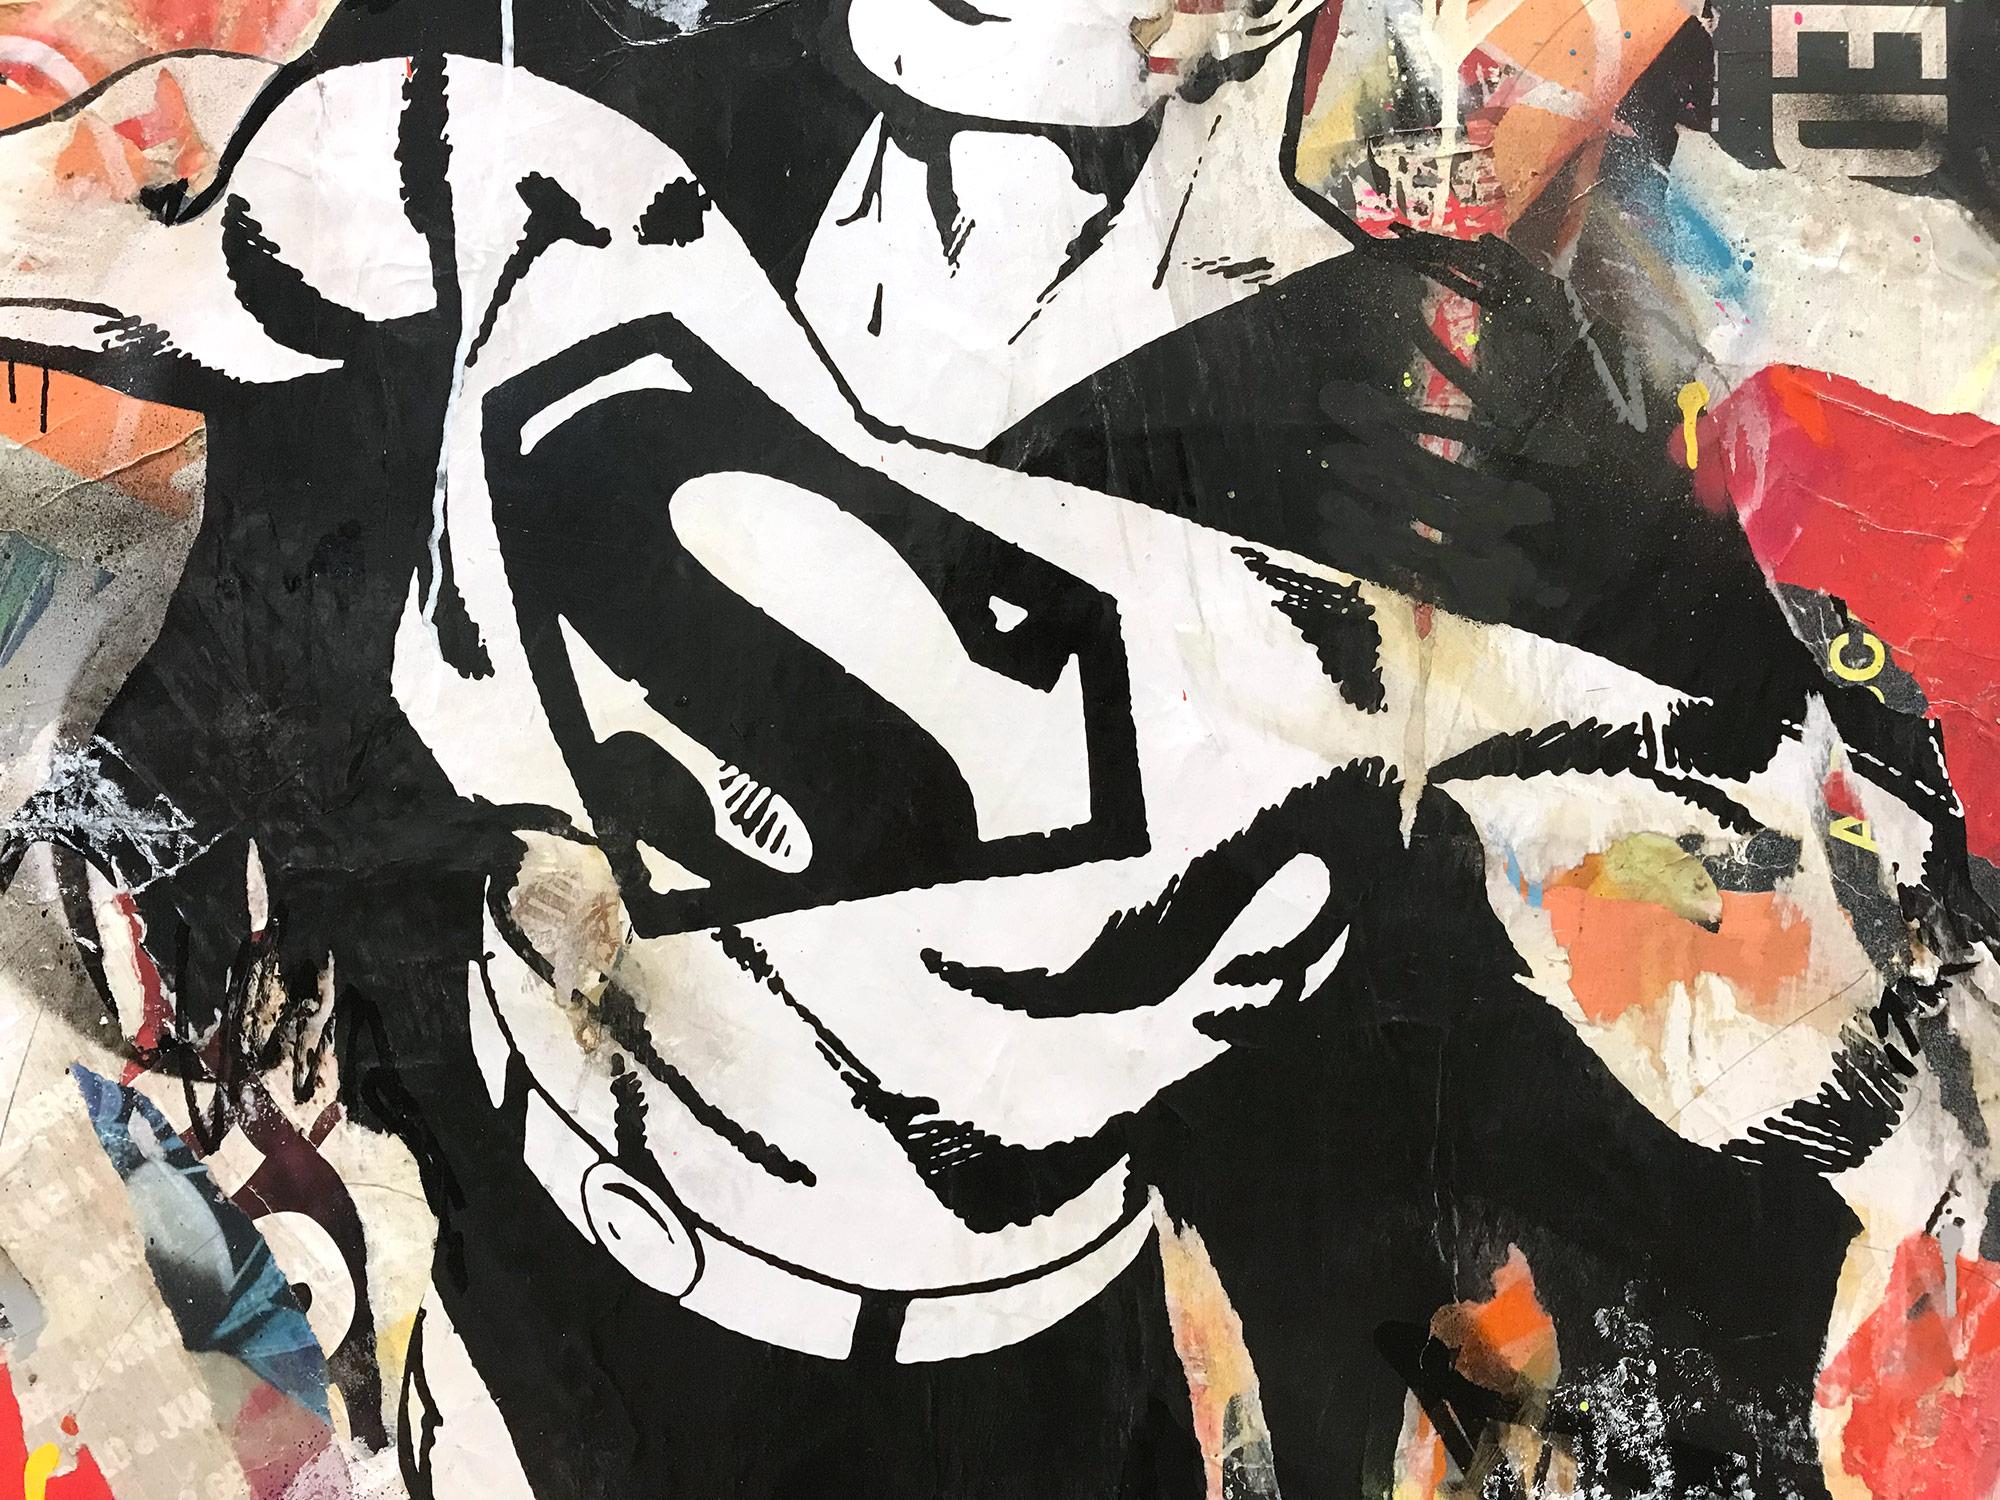 Dieses Stück stellt die berühmte Ikone Superman dar. Mit wunderschönen, ausdrucksstarken Farben und einem unverwechselbaren Street-Art-Design versprüht dieses Stück Energie und romantische Schönheit. Die Komposition und die kühne Collage machen eine